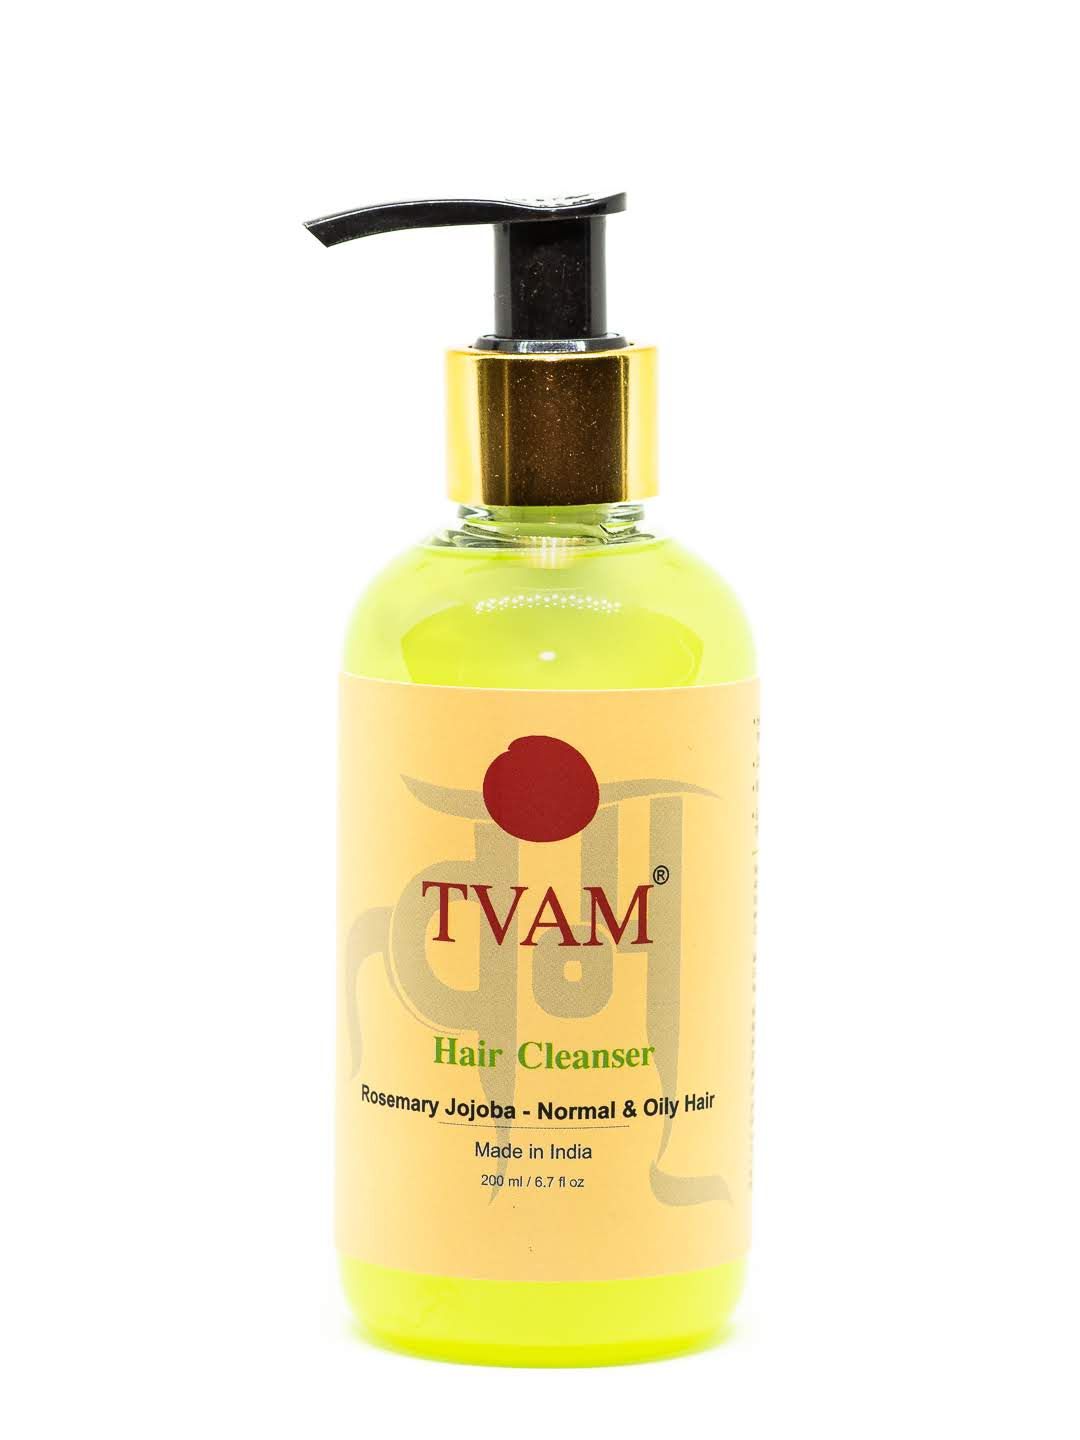 Buy Tvam Hair Cleanser  - Rosemary Jojoba - Normal & Oily Hair - Purplle